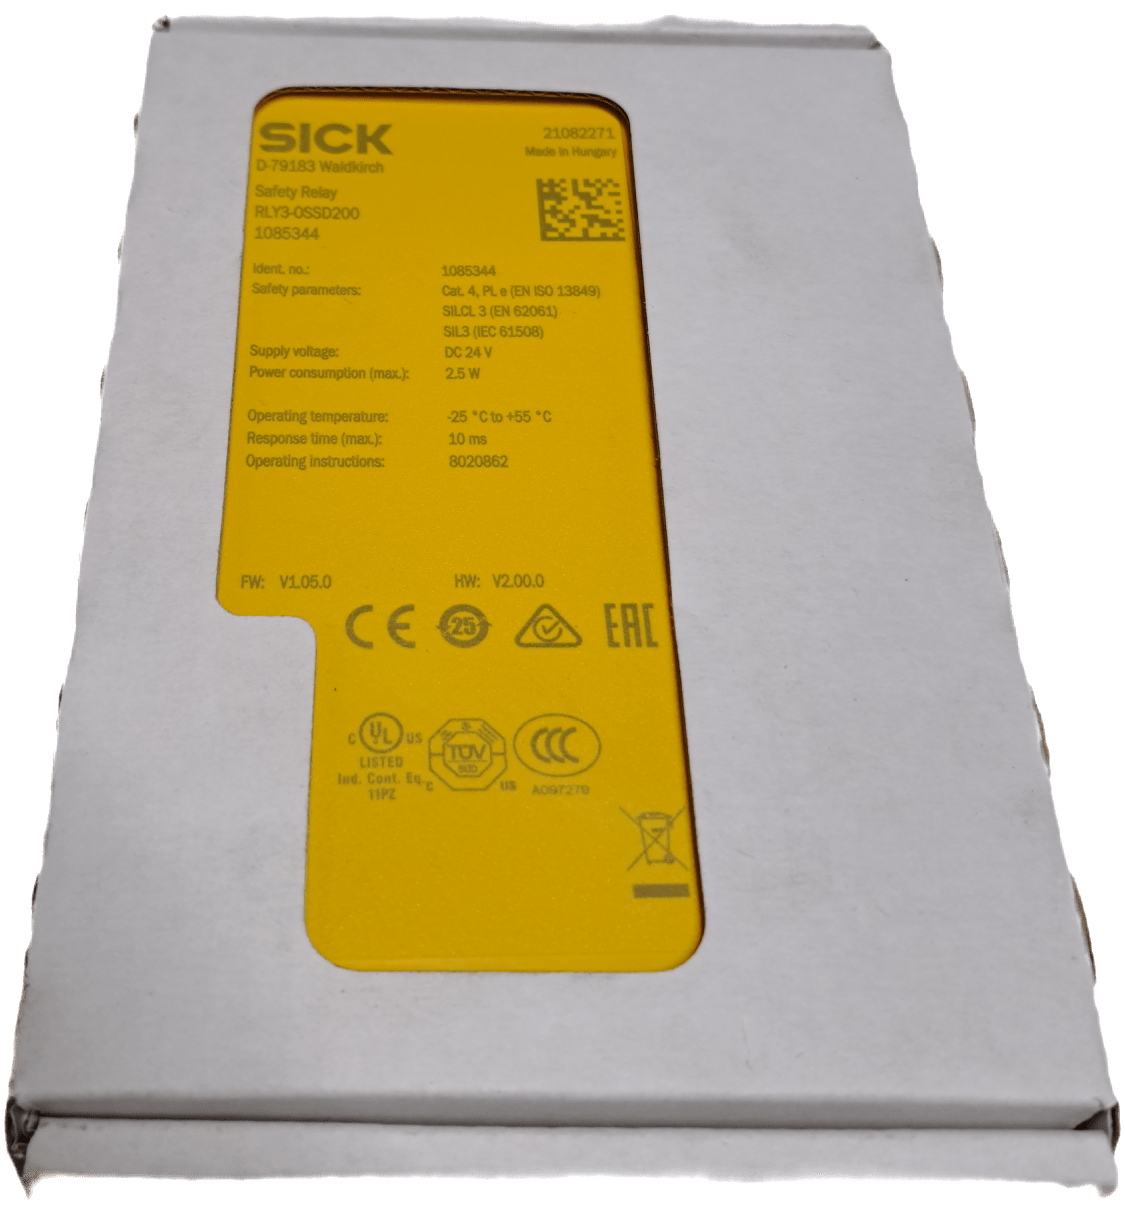 Sick Sicherheitsschaltgeräte RLY3-OSSD200 - #product_category# | Klenk Maschinenhandel